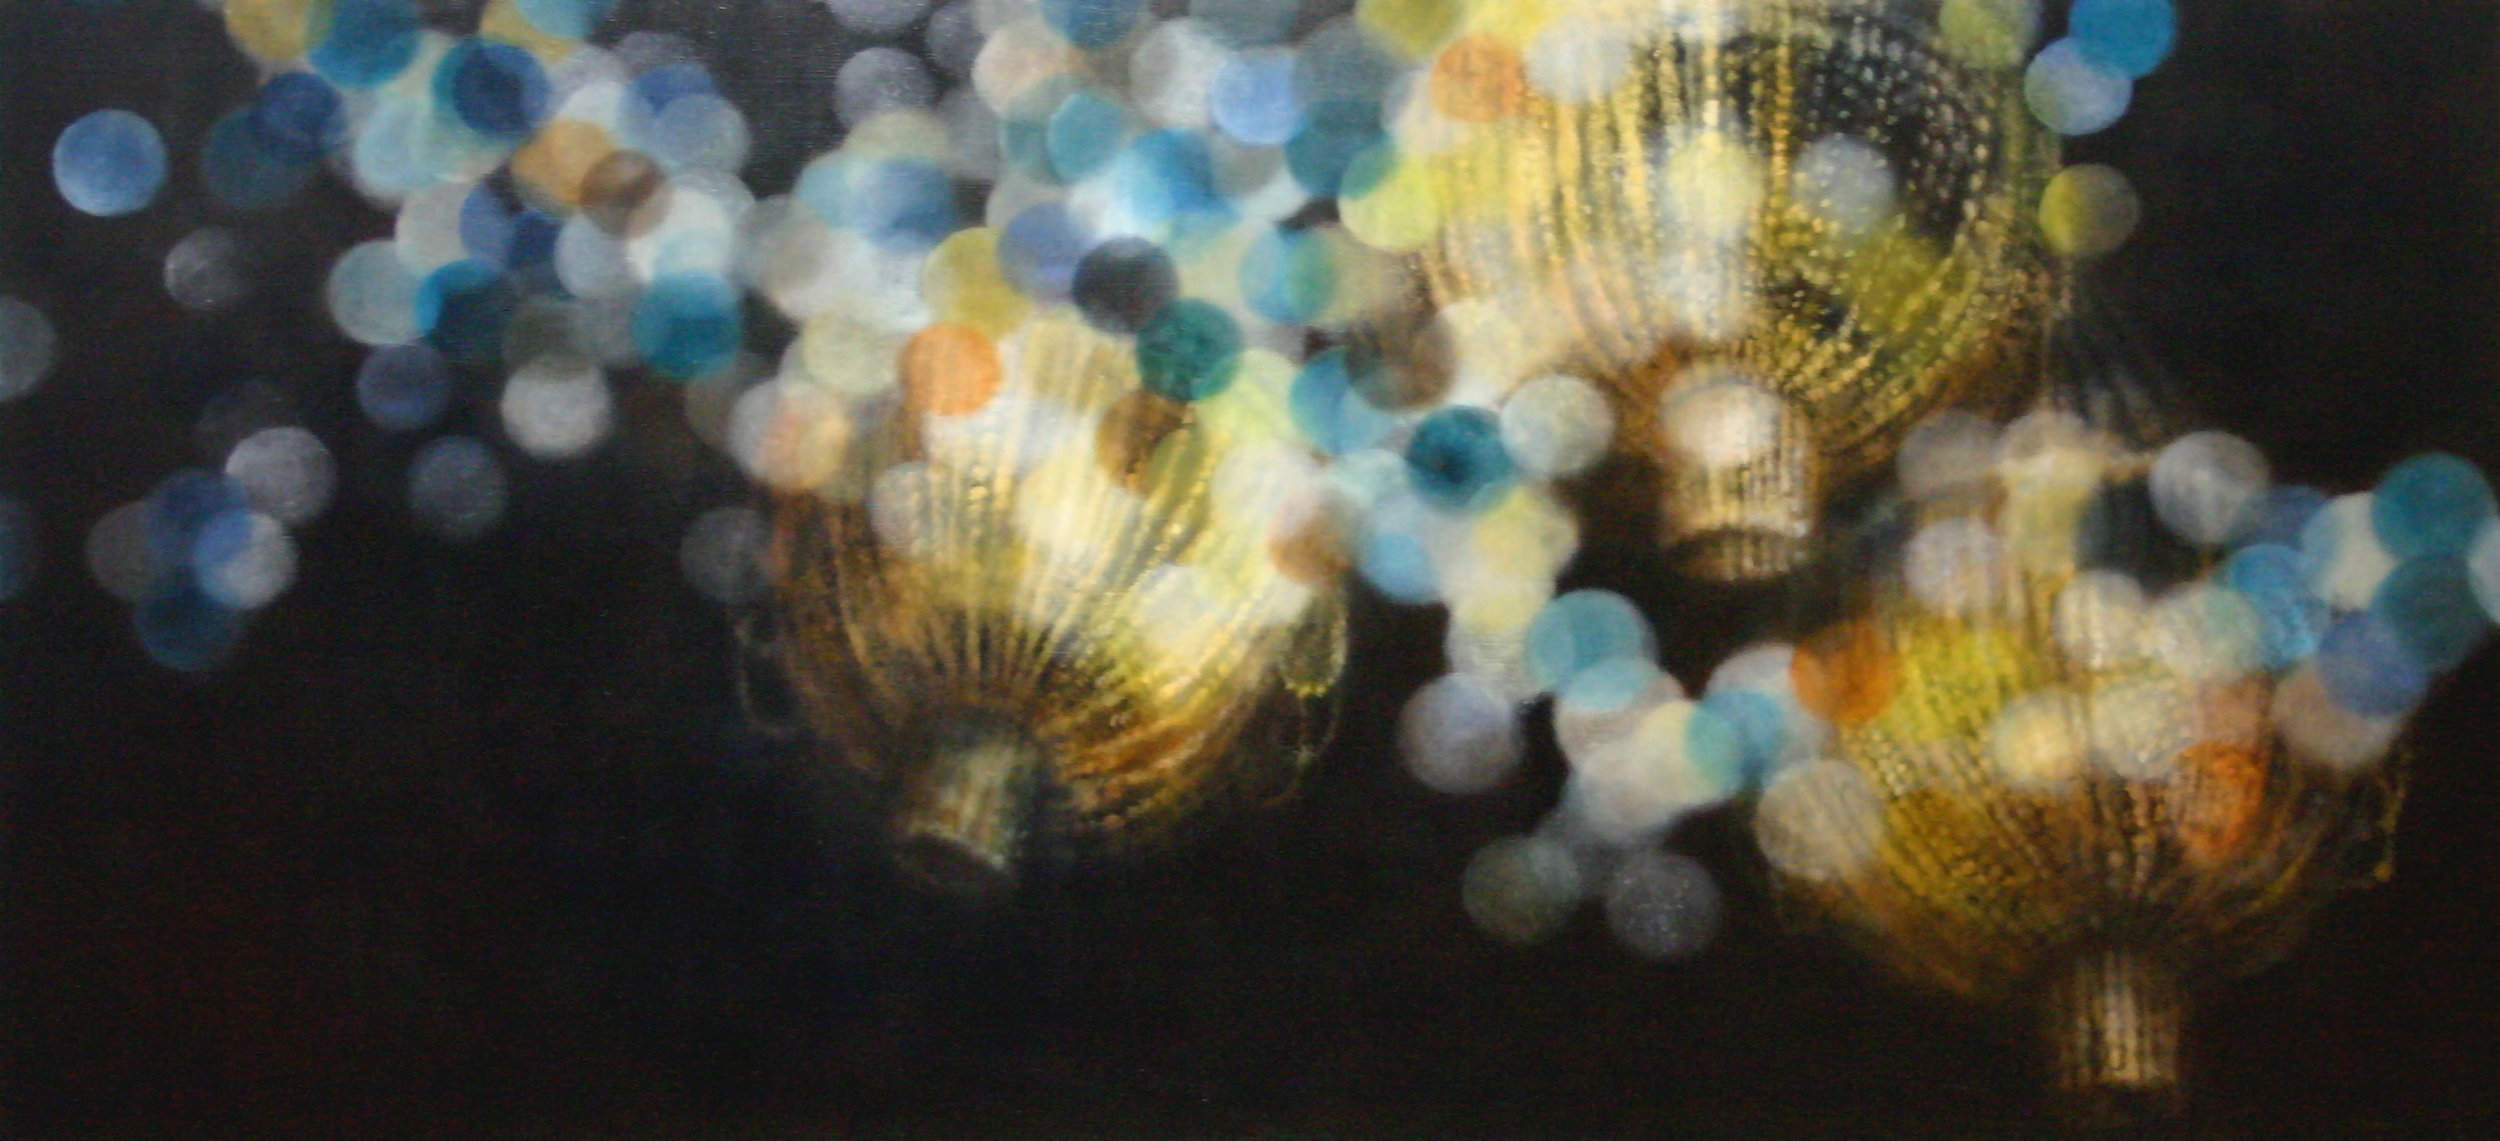  Lanternes, 2008, oil on linen, 92x200cm 